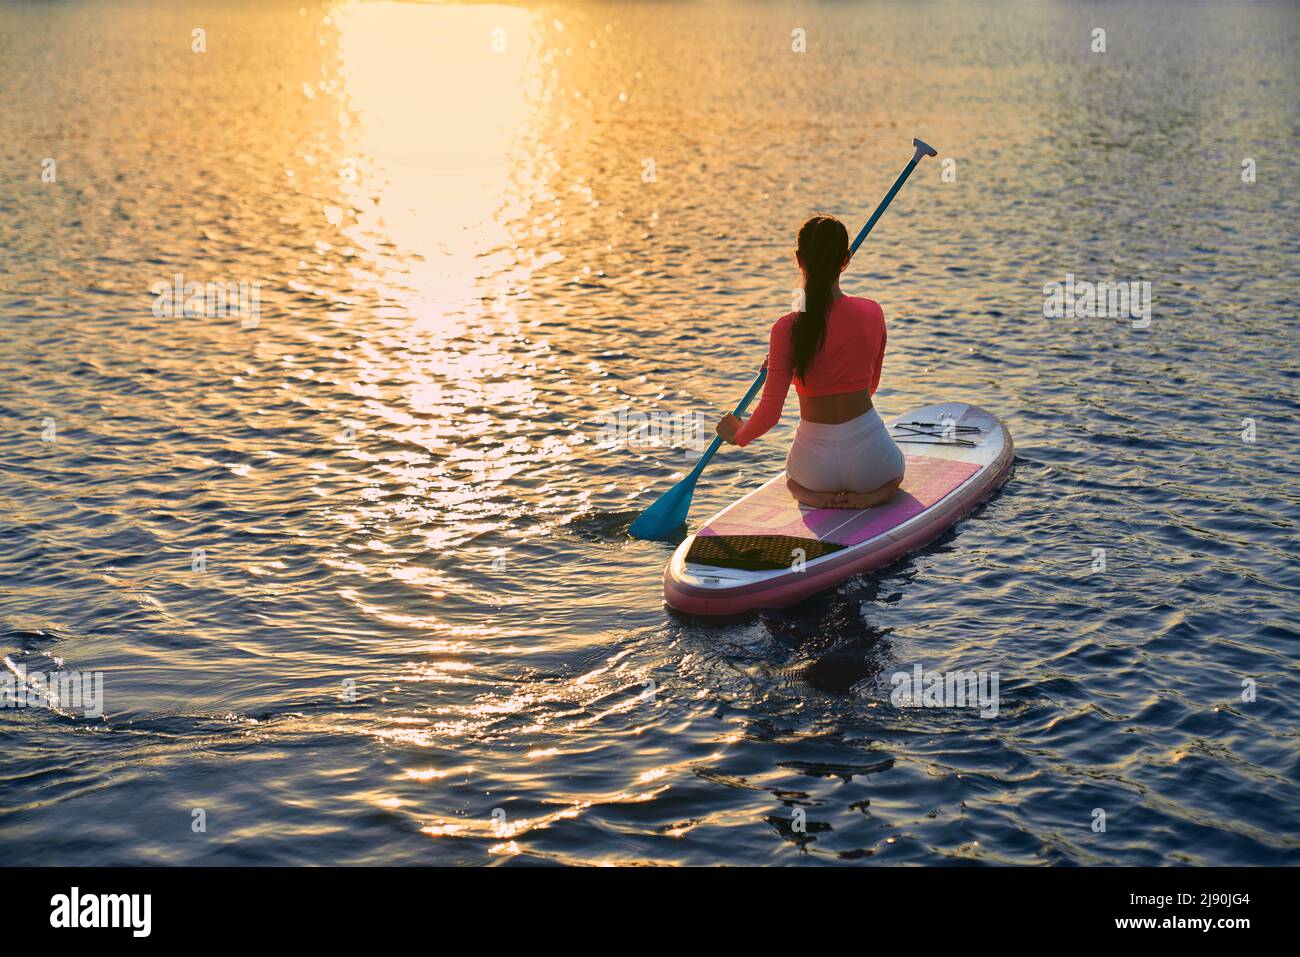 Junge Sportlerin, die am Abend am Stadtsee zum Training im Supboarding unterwegs ist. Schöner Sonnenuntergang im Hintergrund. Reflexion auf dem Wasser. Stockfoto